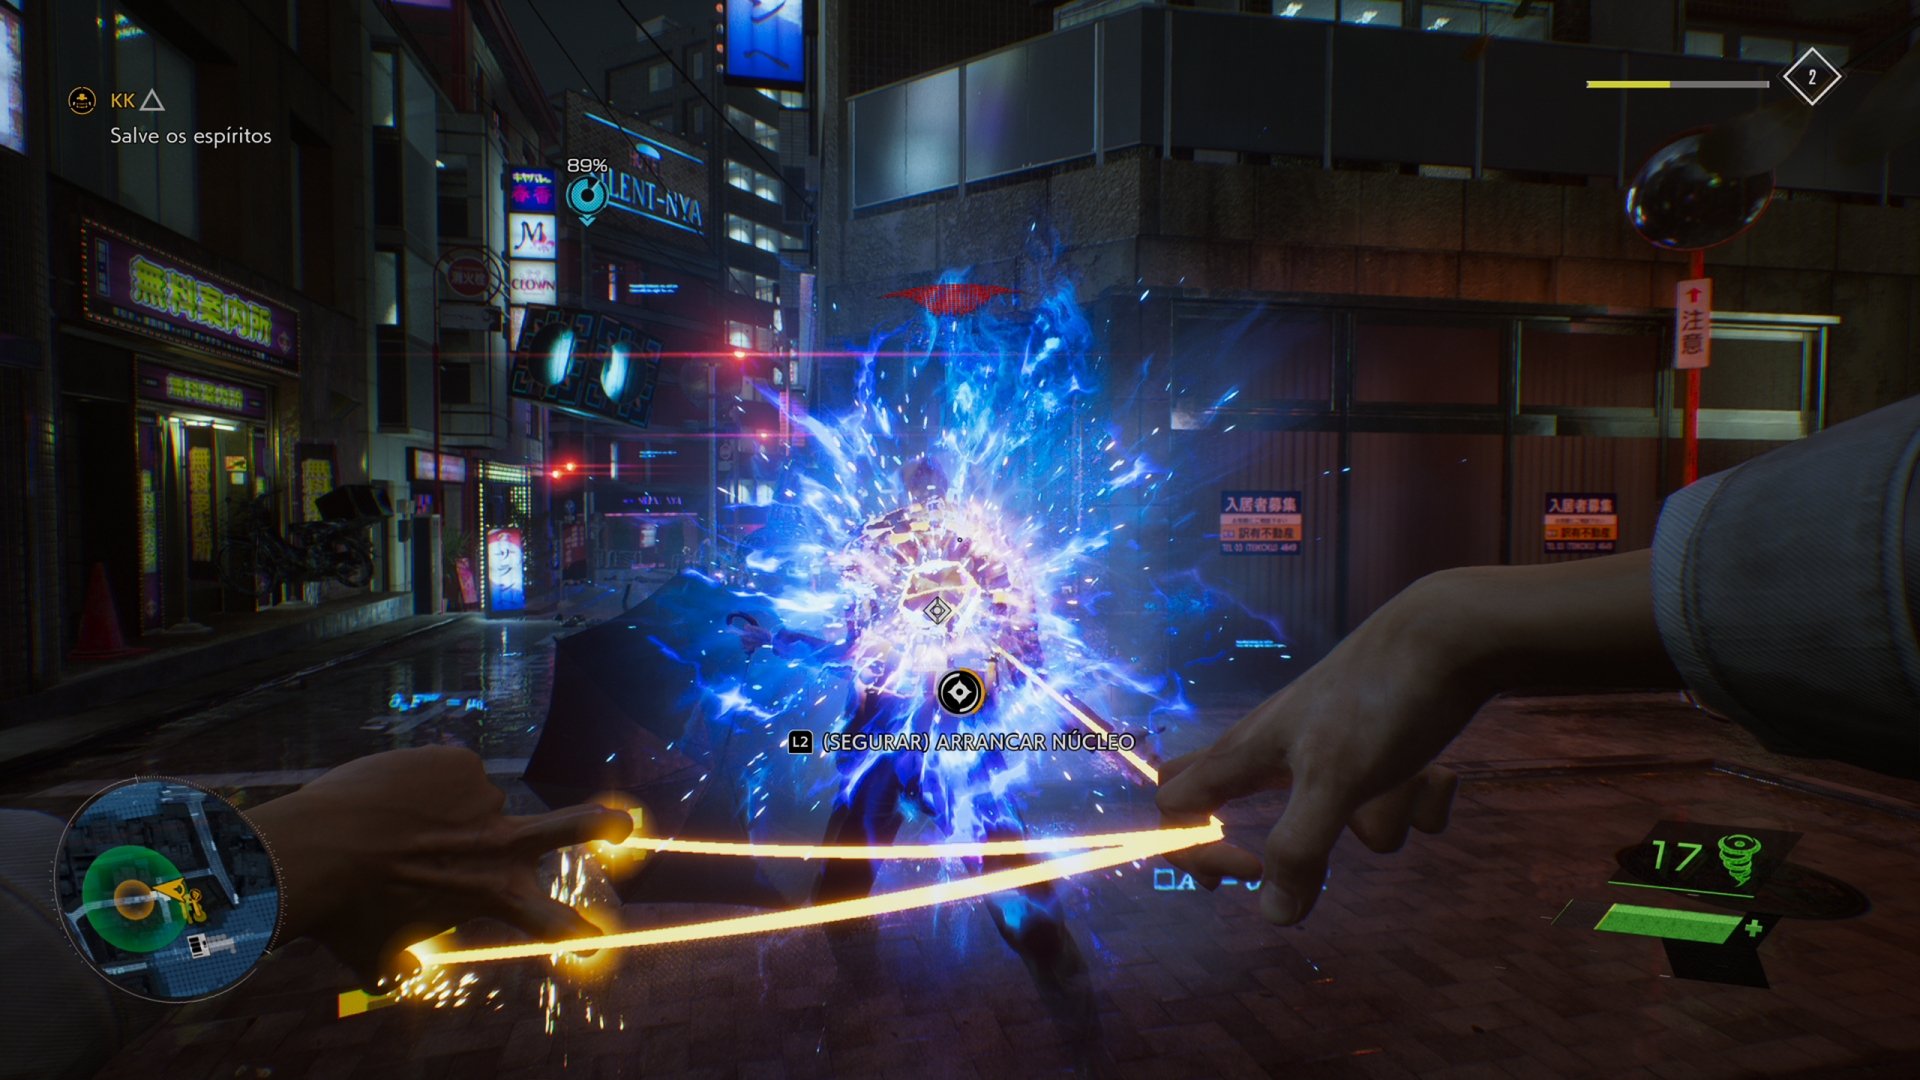 GhostWire Tokyo ganha nova e espetacular gameplay – Combo Infinito